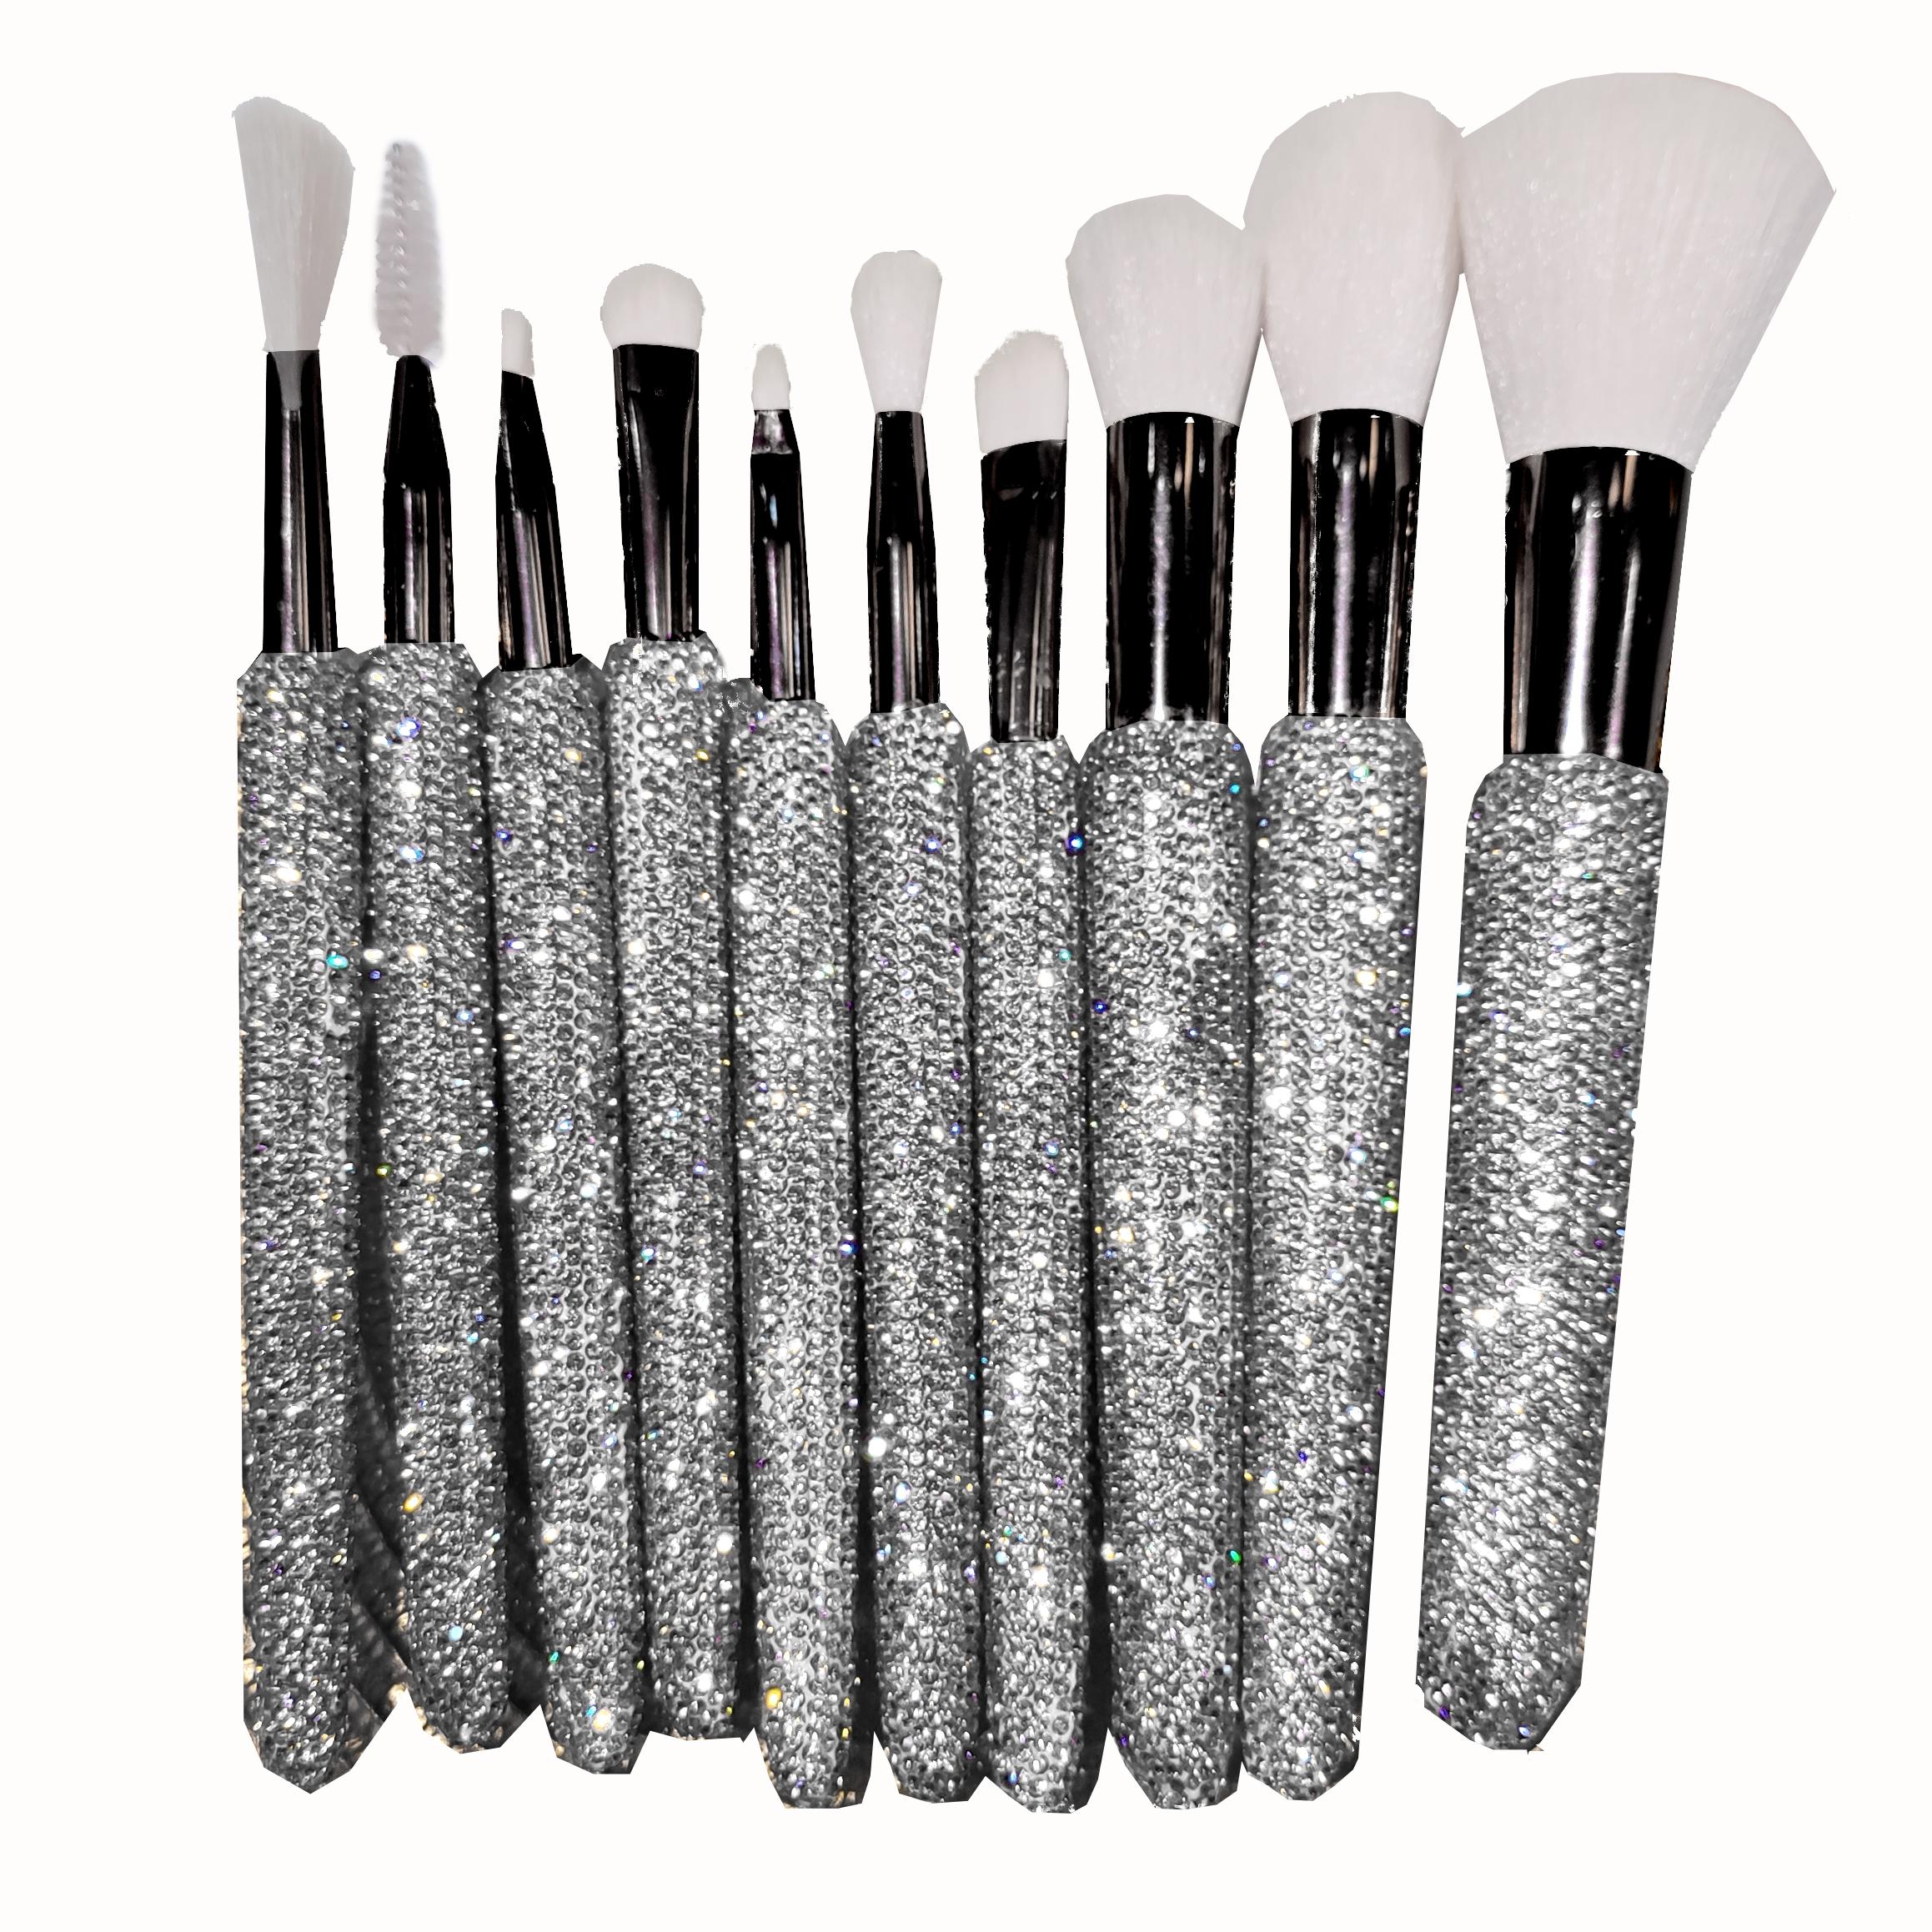 Bling Silver Rhinestone Makeup Brush Manufacturer